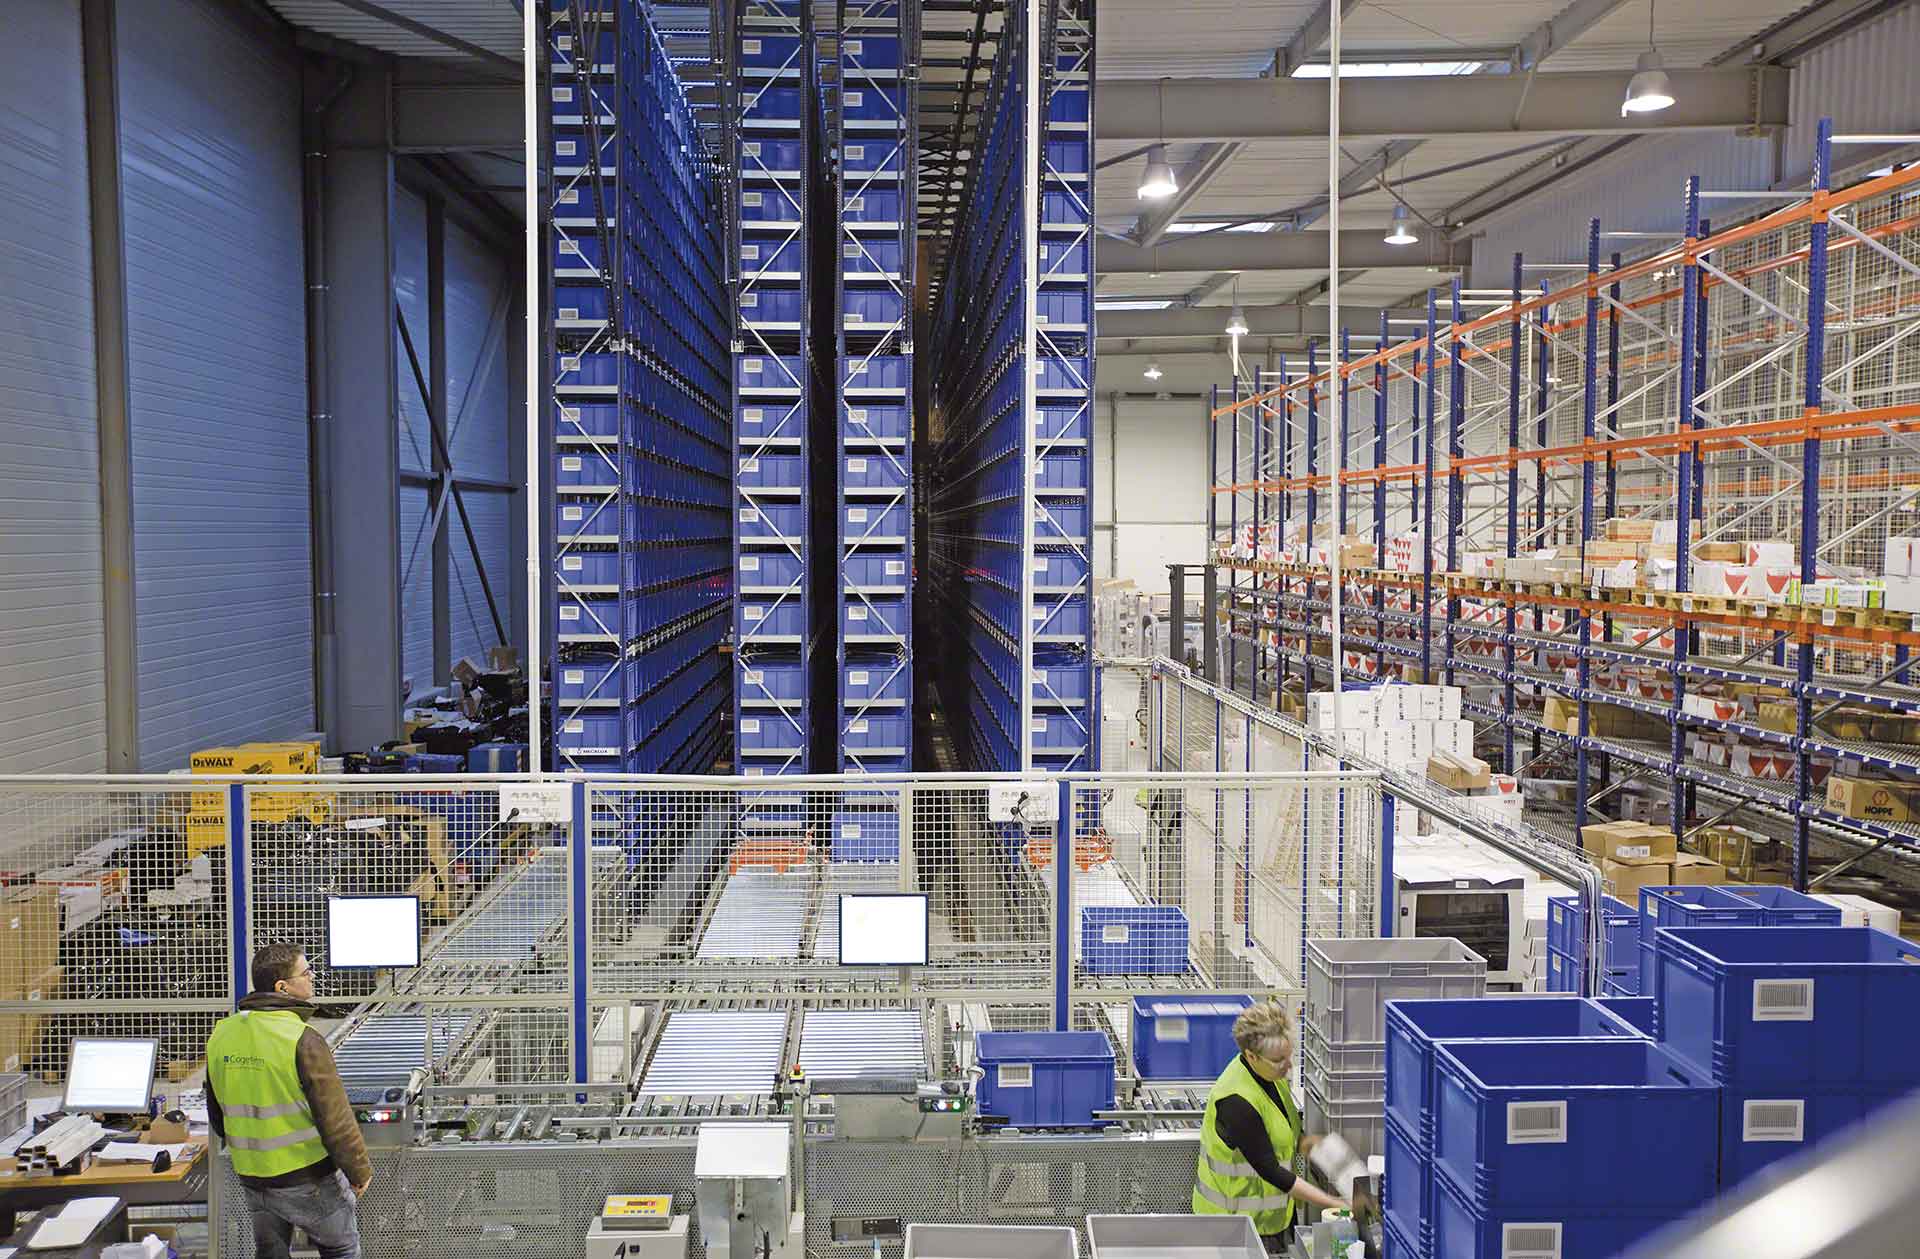 Lagerautomatisierung ist der Schlüssel zur Steigerung der Effizienz in der Produktionslogistik